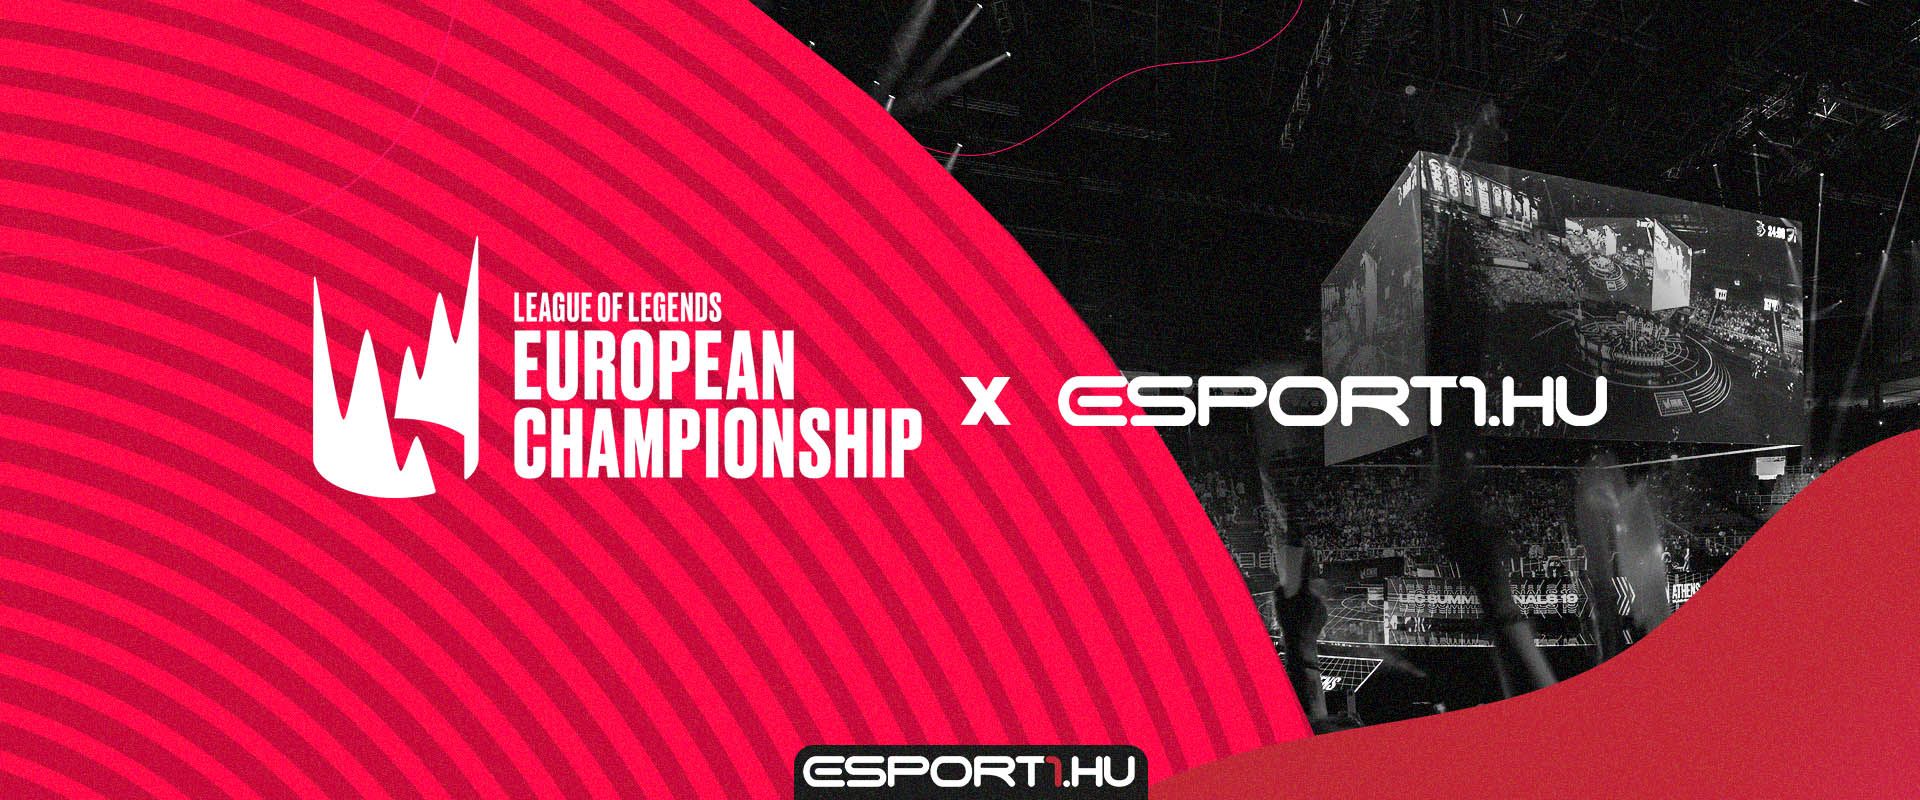 Az Esport1.hu lett a LEC kizárólagos hazai közvetítő partnere